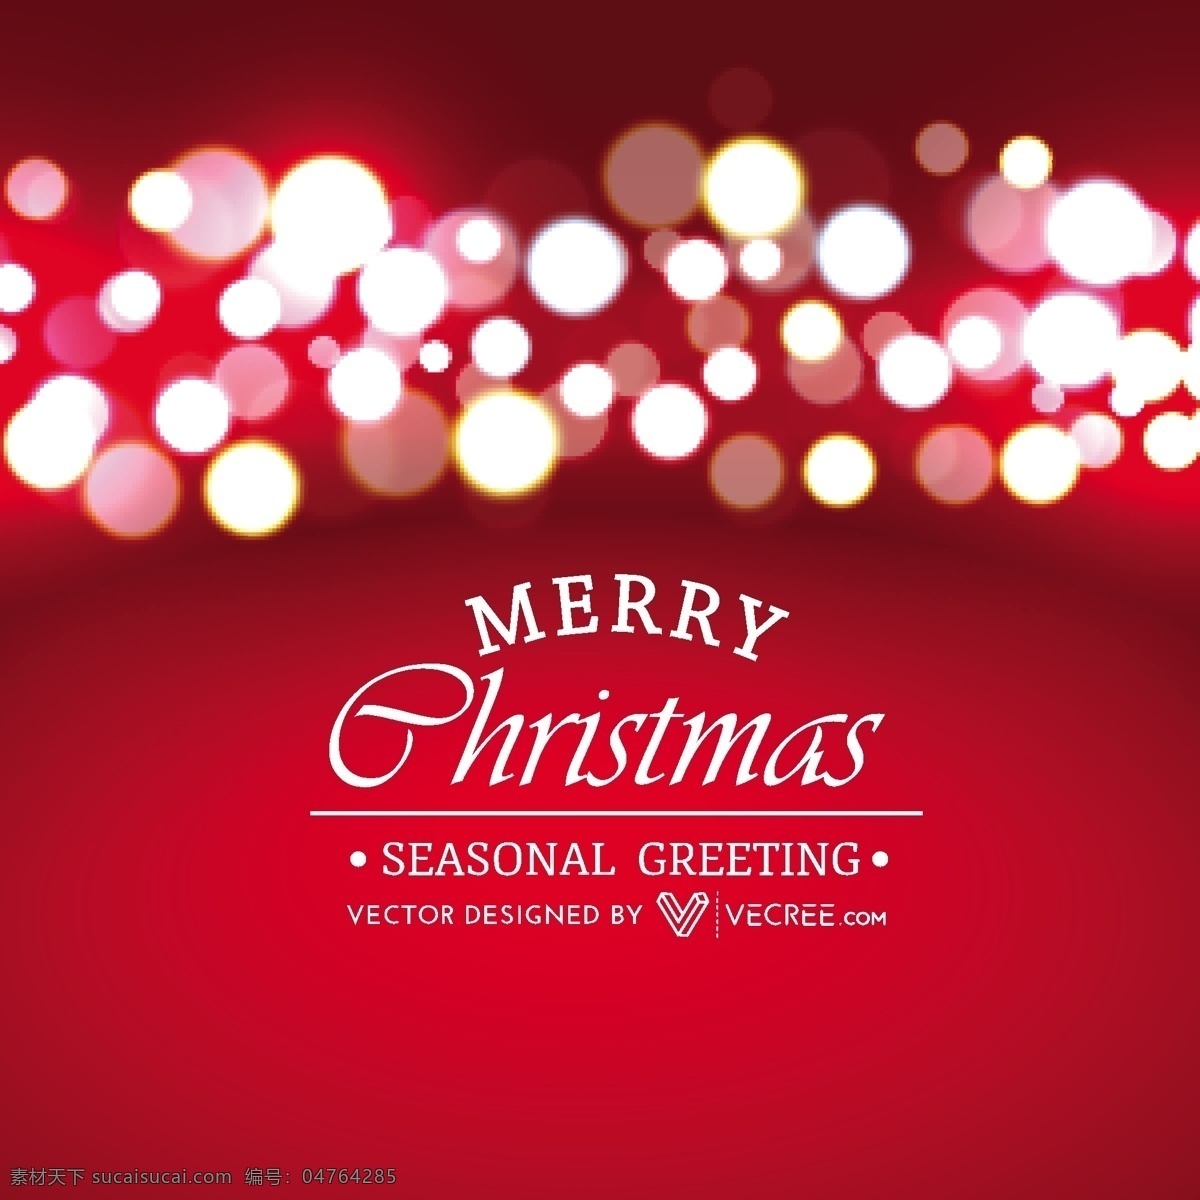 散 景 灯 闪亮 红色 圣诞 背景 背景壁纸 庆典和聚会 圣诞节 设计元素 节假日 季节性 模板和模型